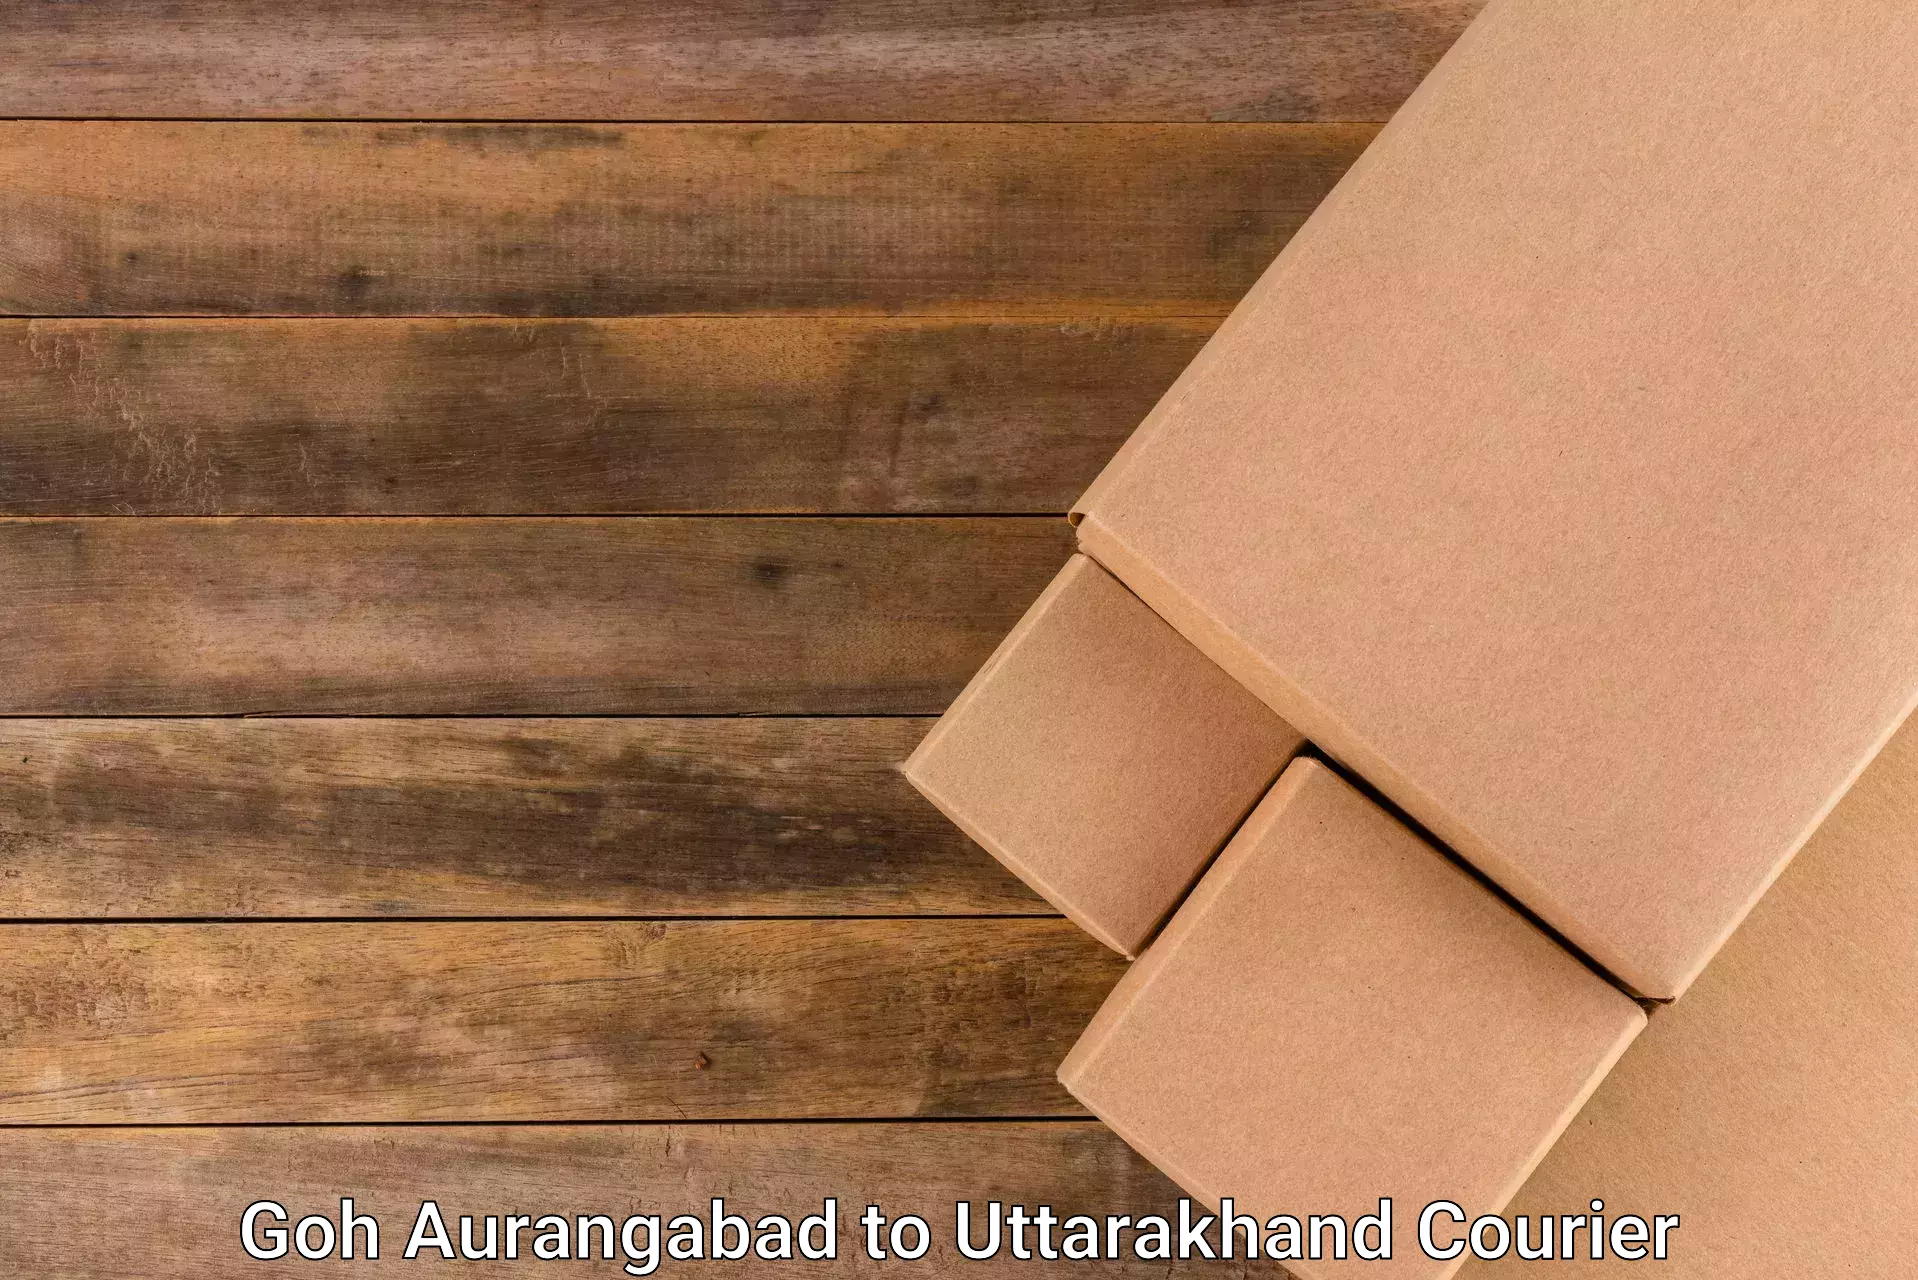 Cash on delivery service Goh Aurangabad to Udham Singh Nagar